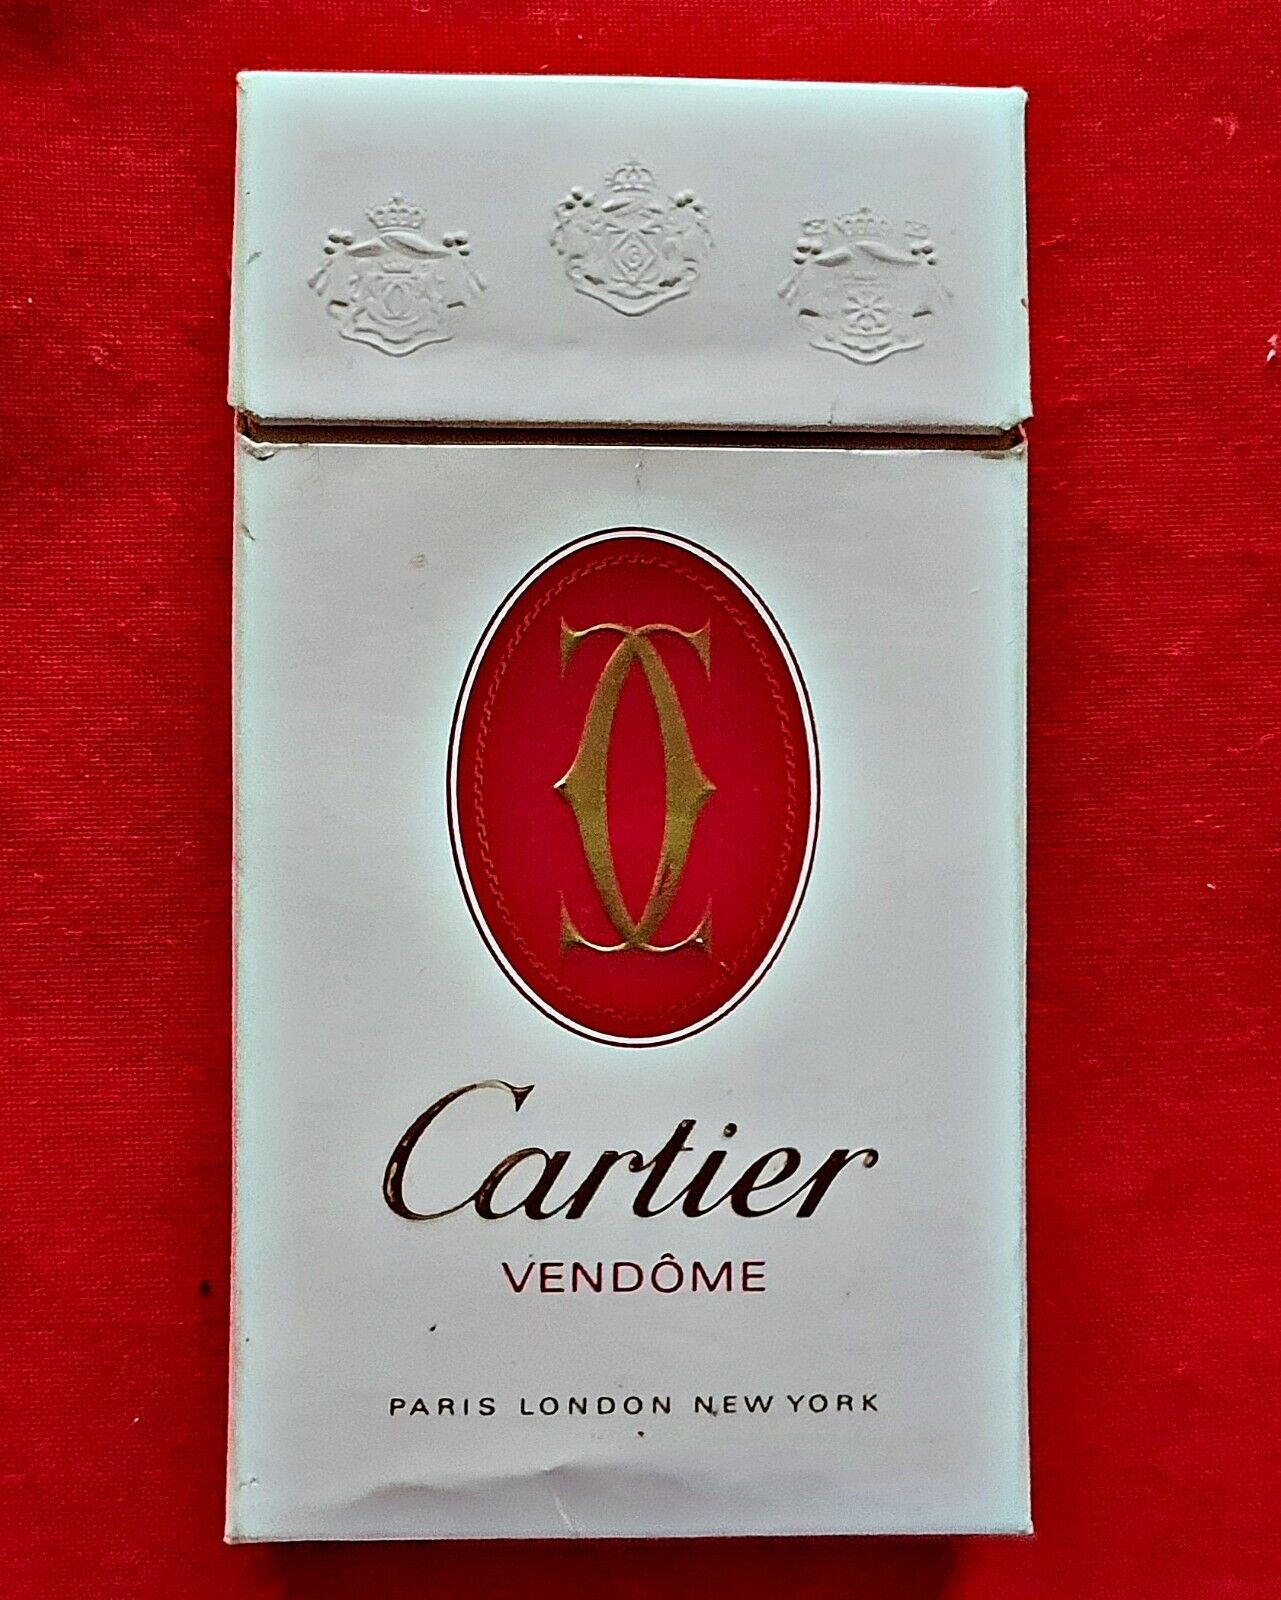 Vintage Authentic 70's CARTIER Vendome Slims 100s Cigarette Packet Tobacco Empty